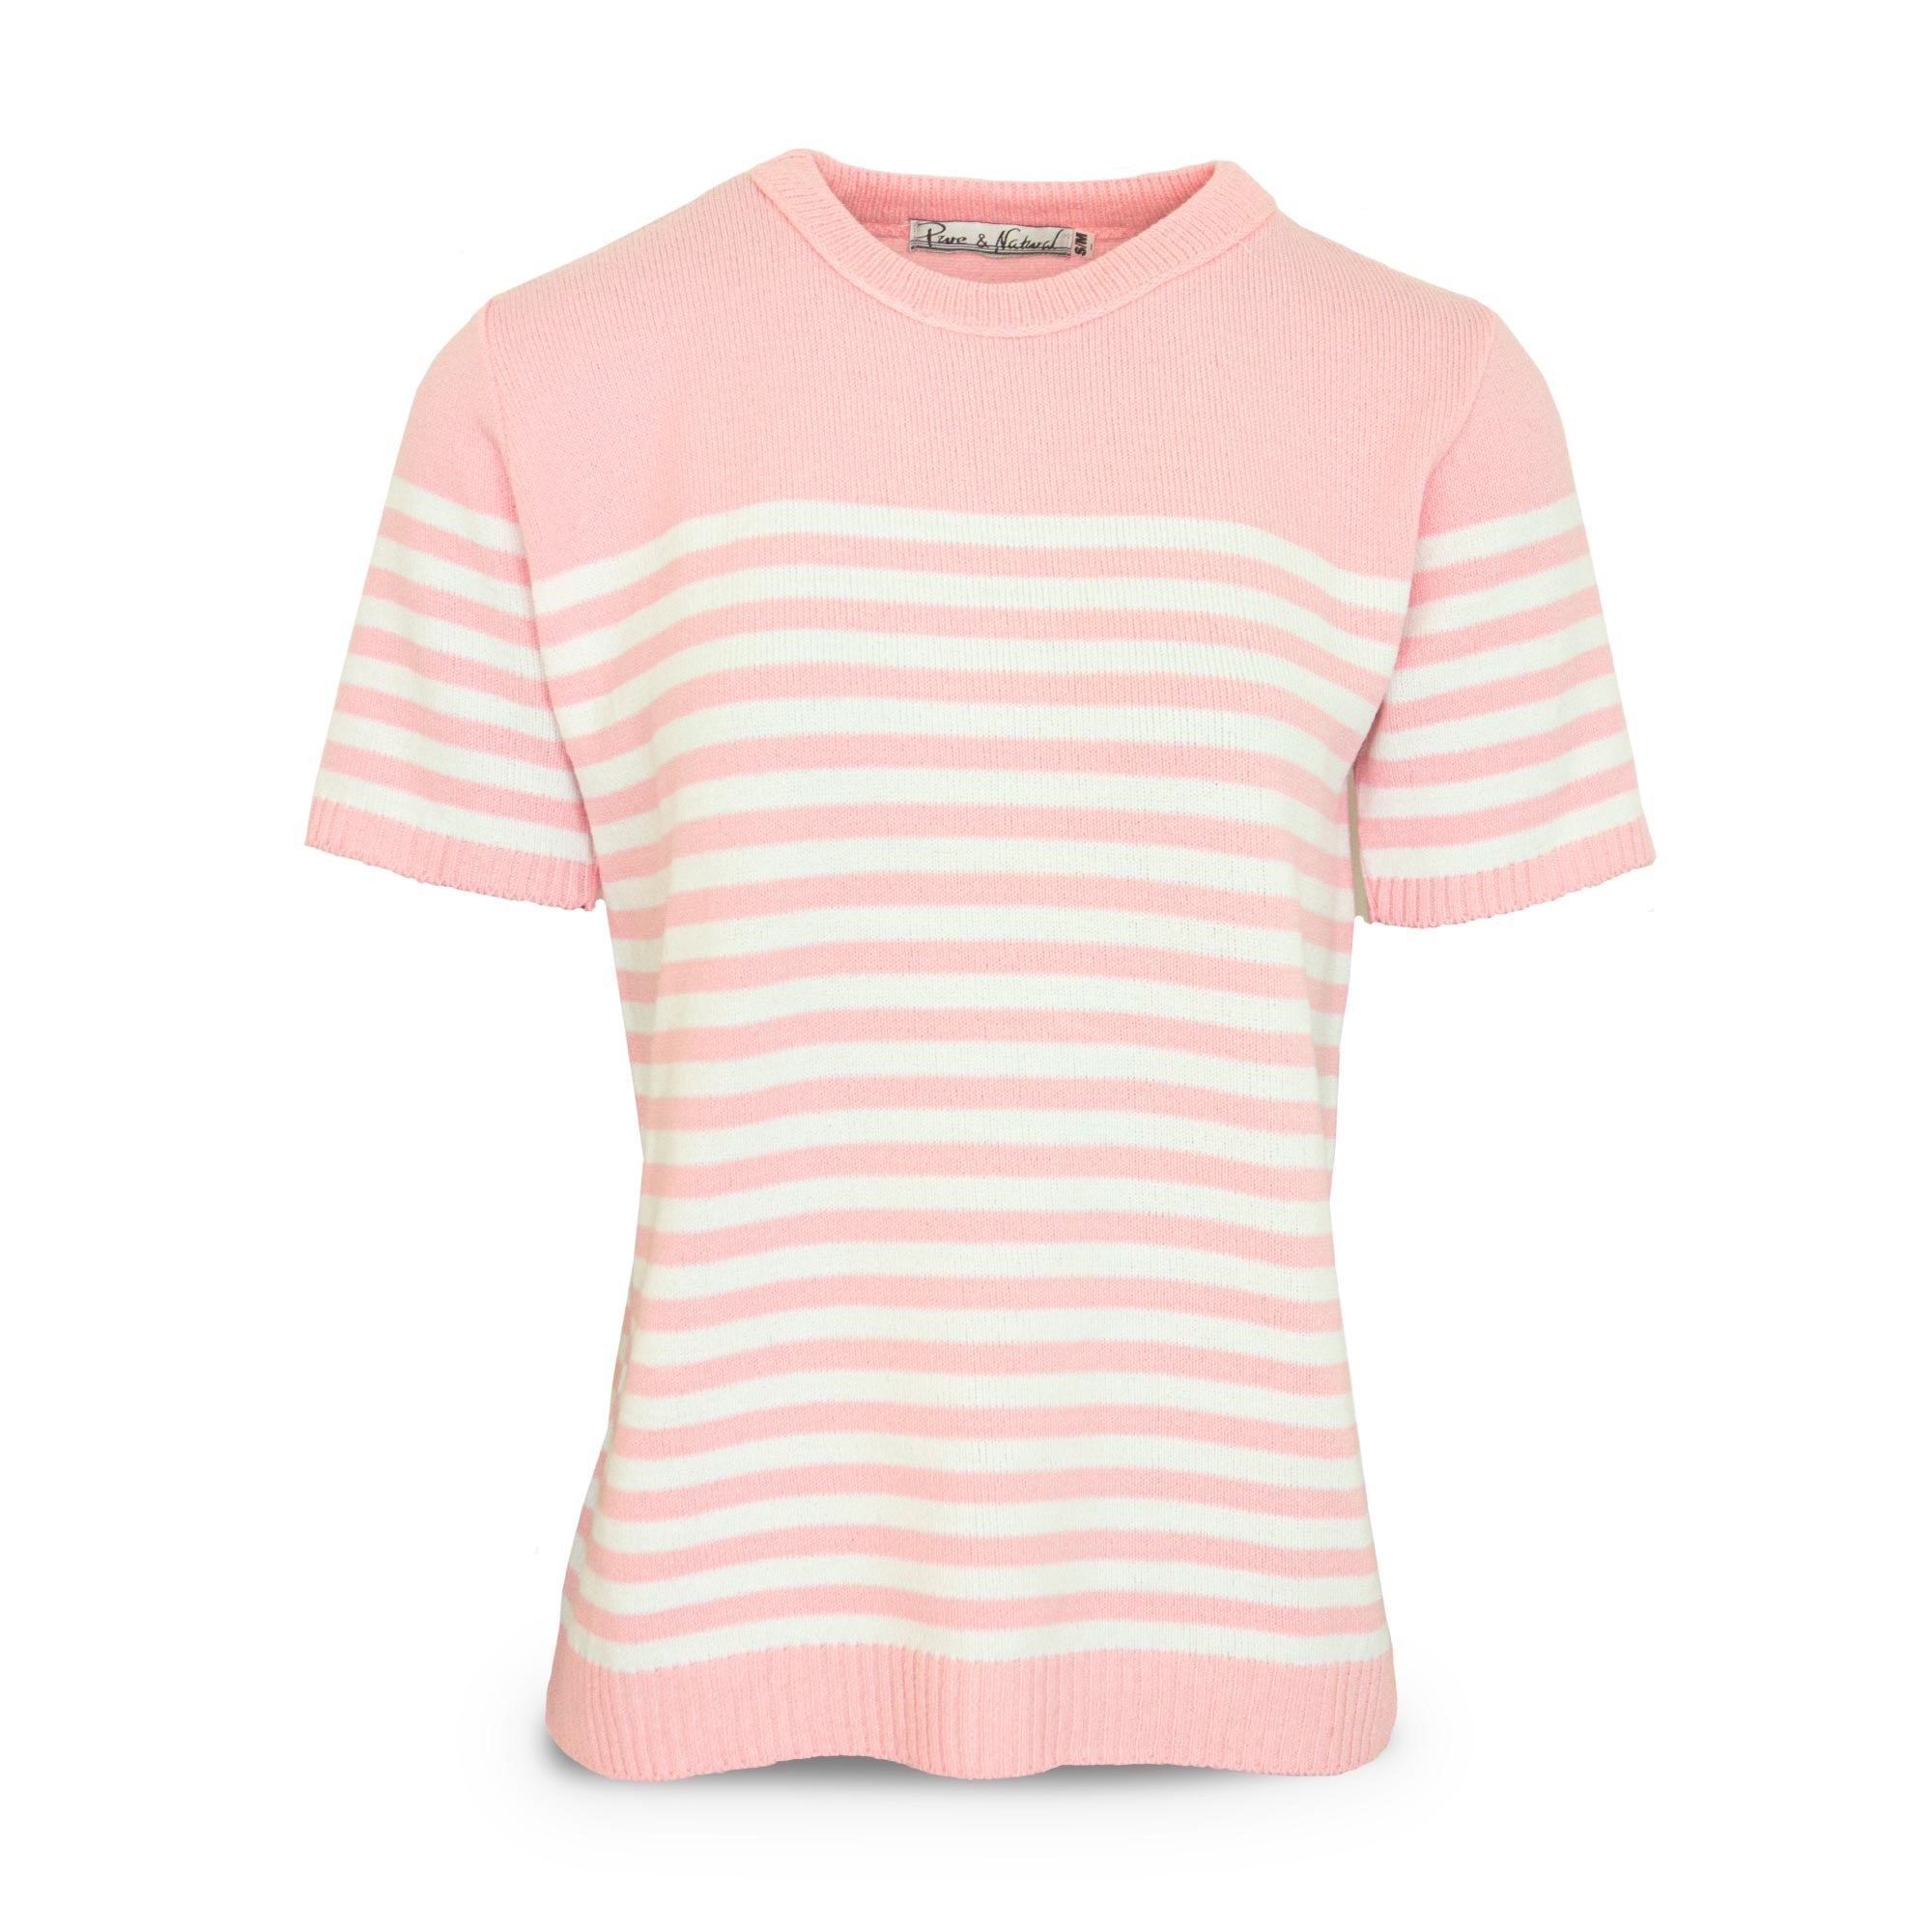 Ladies Stripe Sweater - Pink - L/XL - TJ Hughes